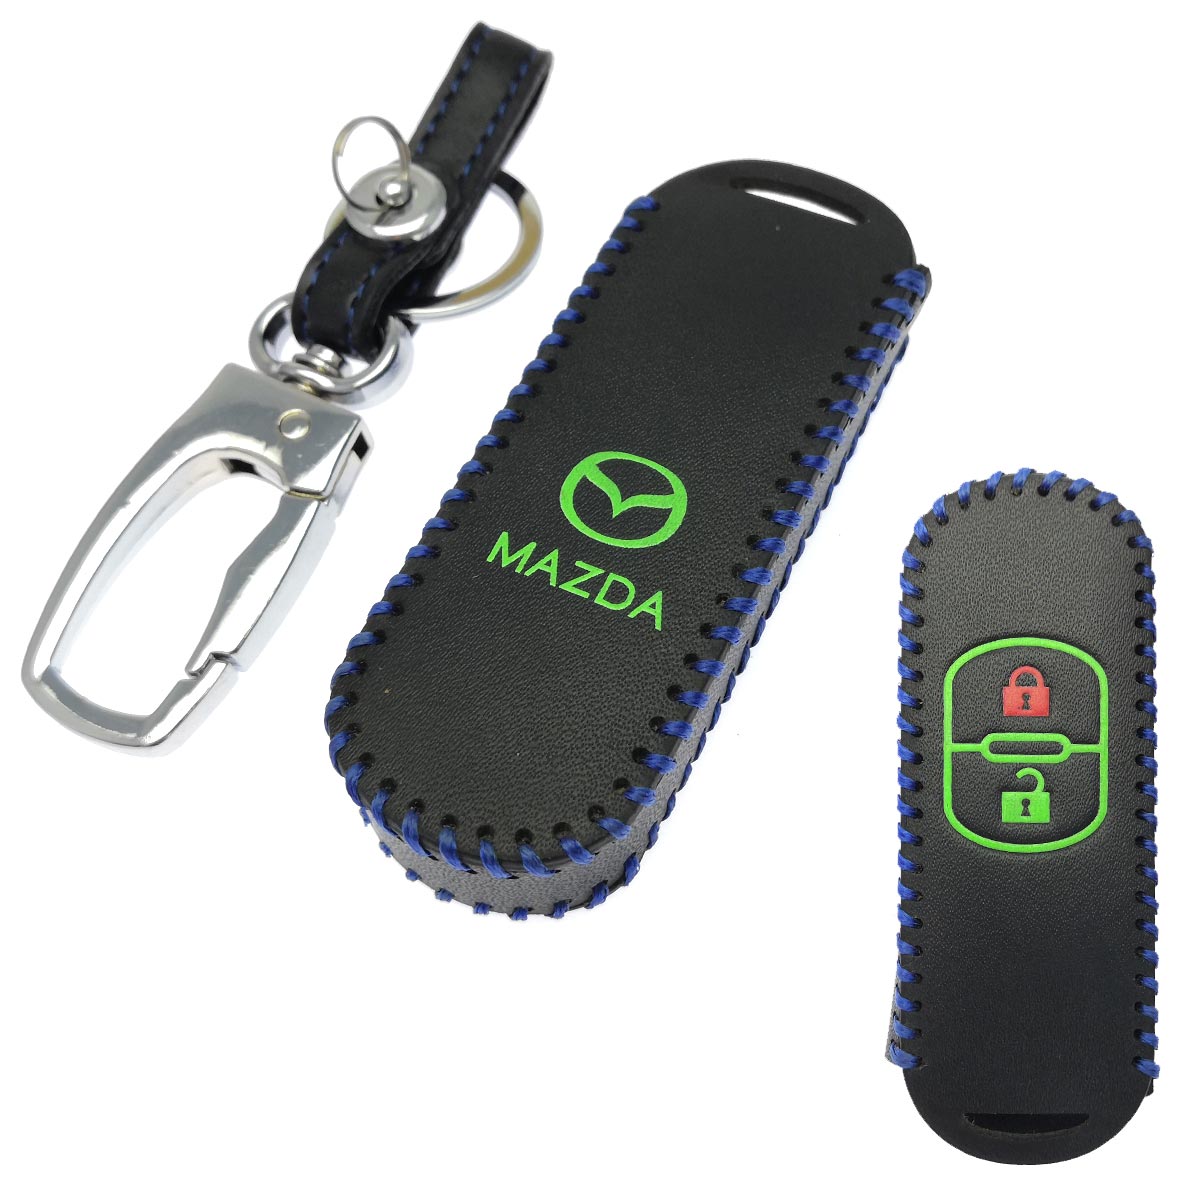 Чехол для брелка автомобиля Mazda, 2 кнопки, экокожа, цвет черный с синей окантовкой